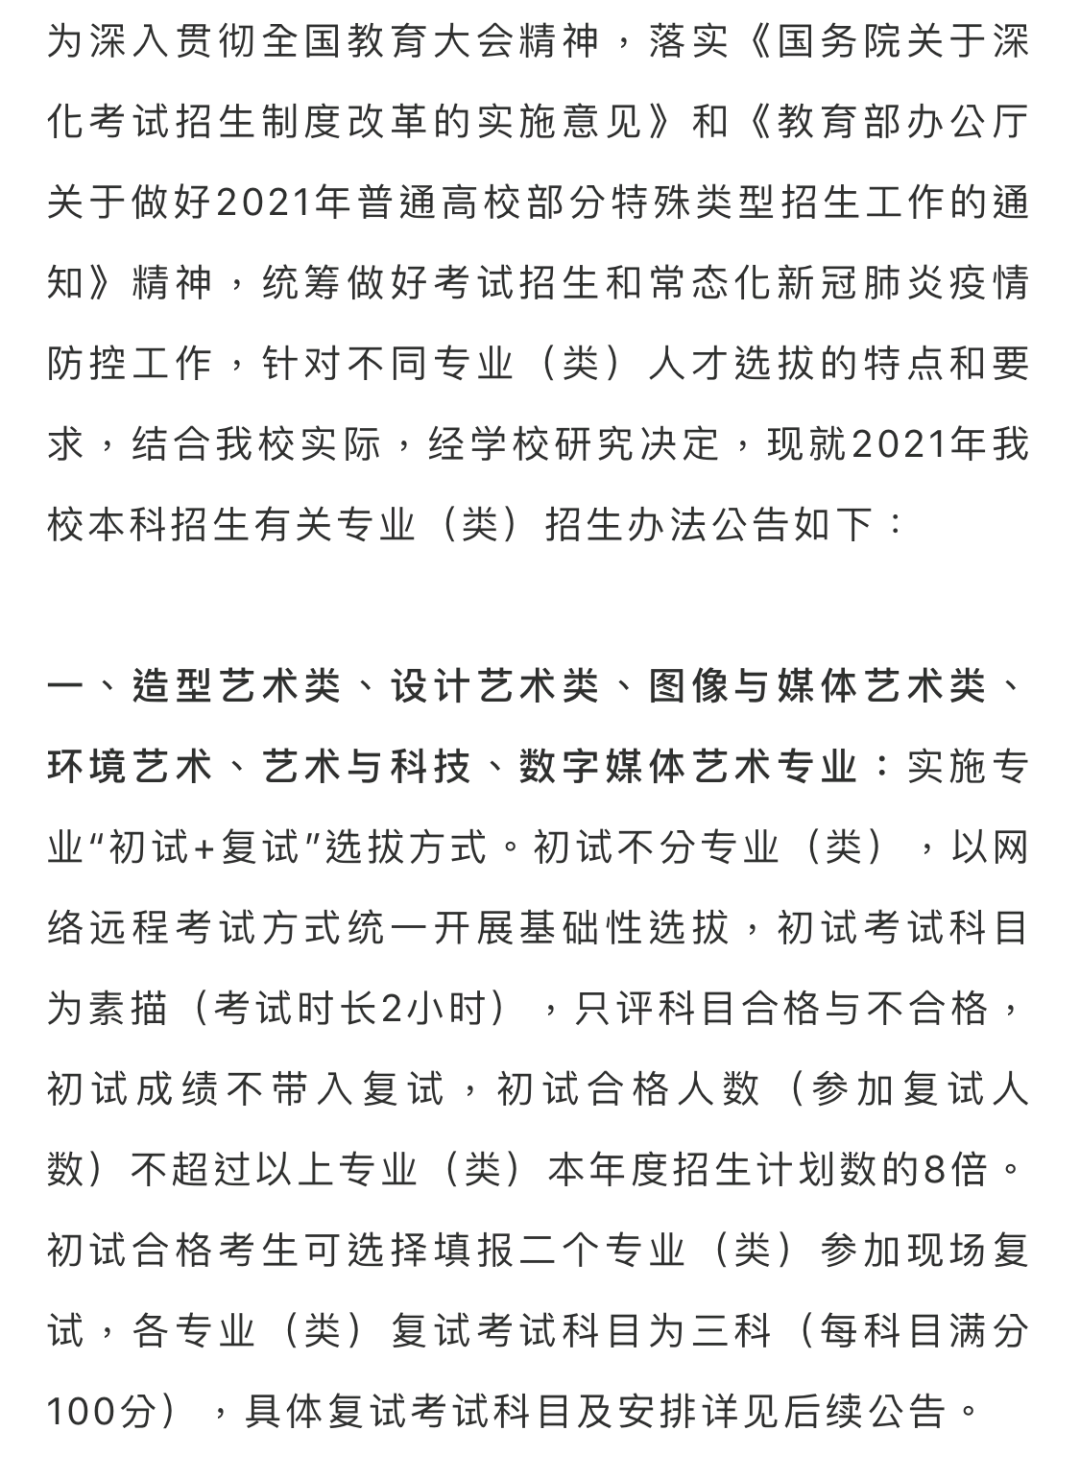 重要资讯｜中国美术学院2021年本科招生办法公告(二)